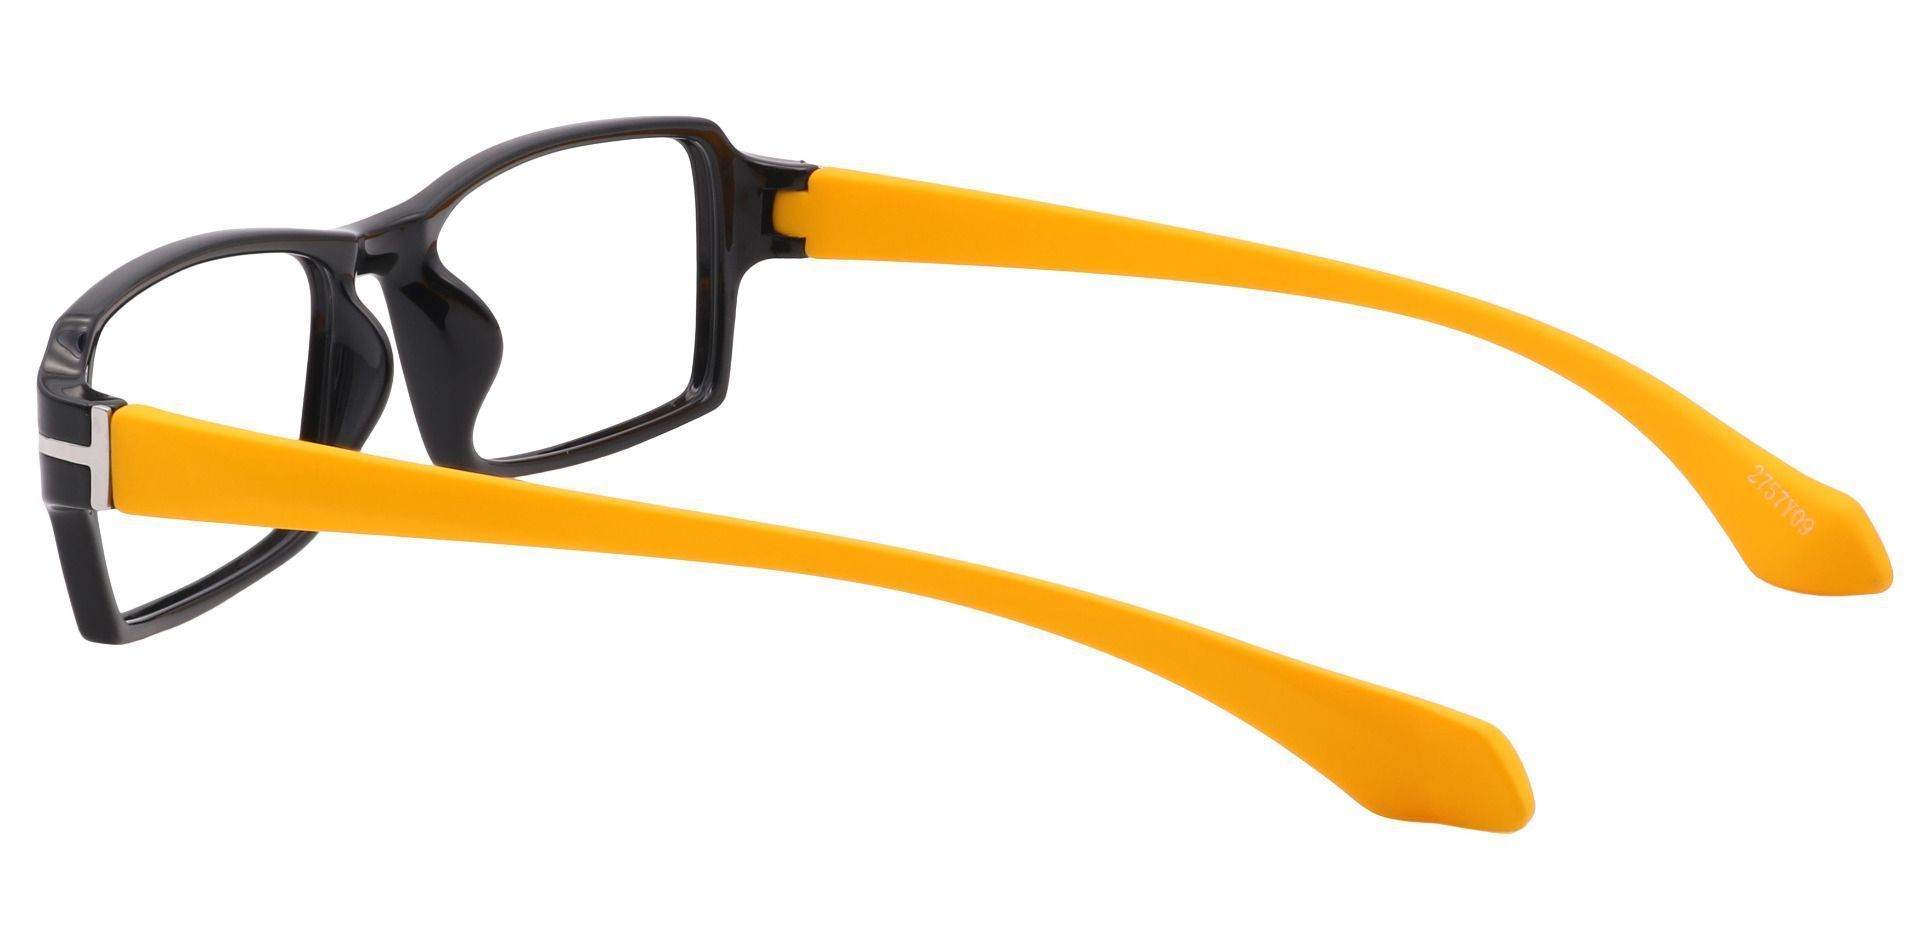 Kaiser Rectangle Eyeglasses Frame - Yellow